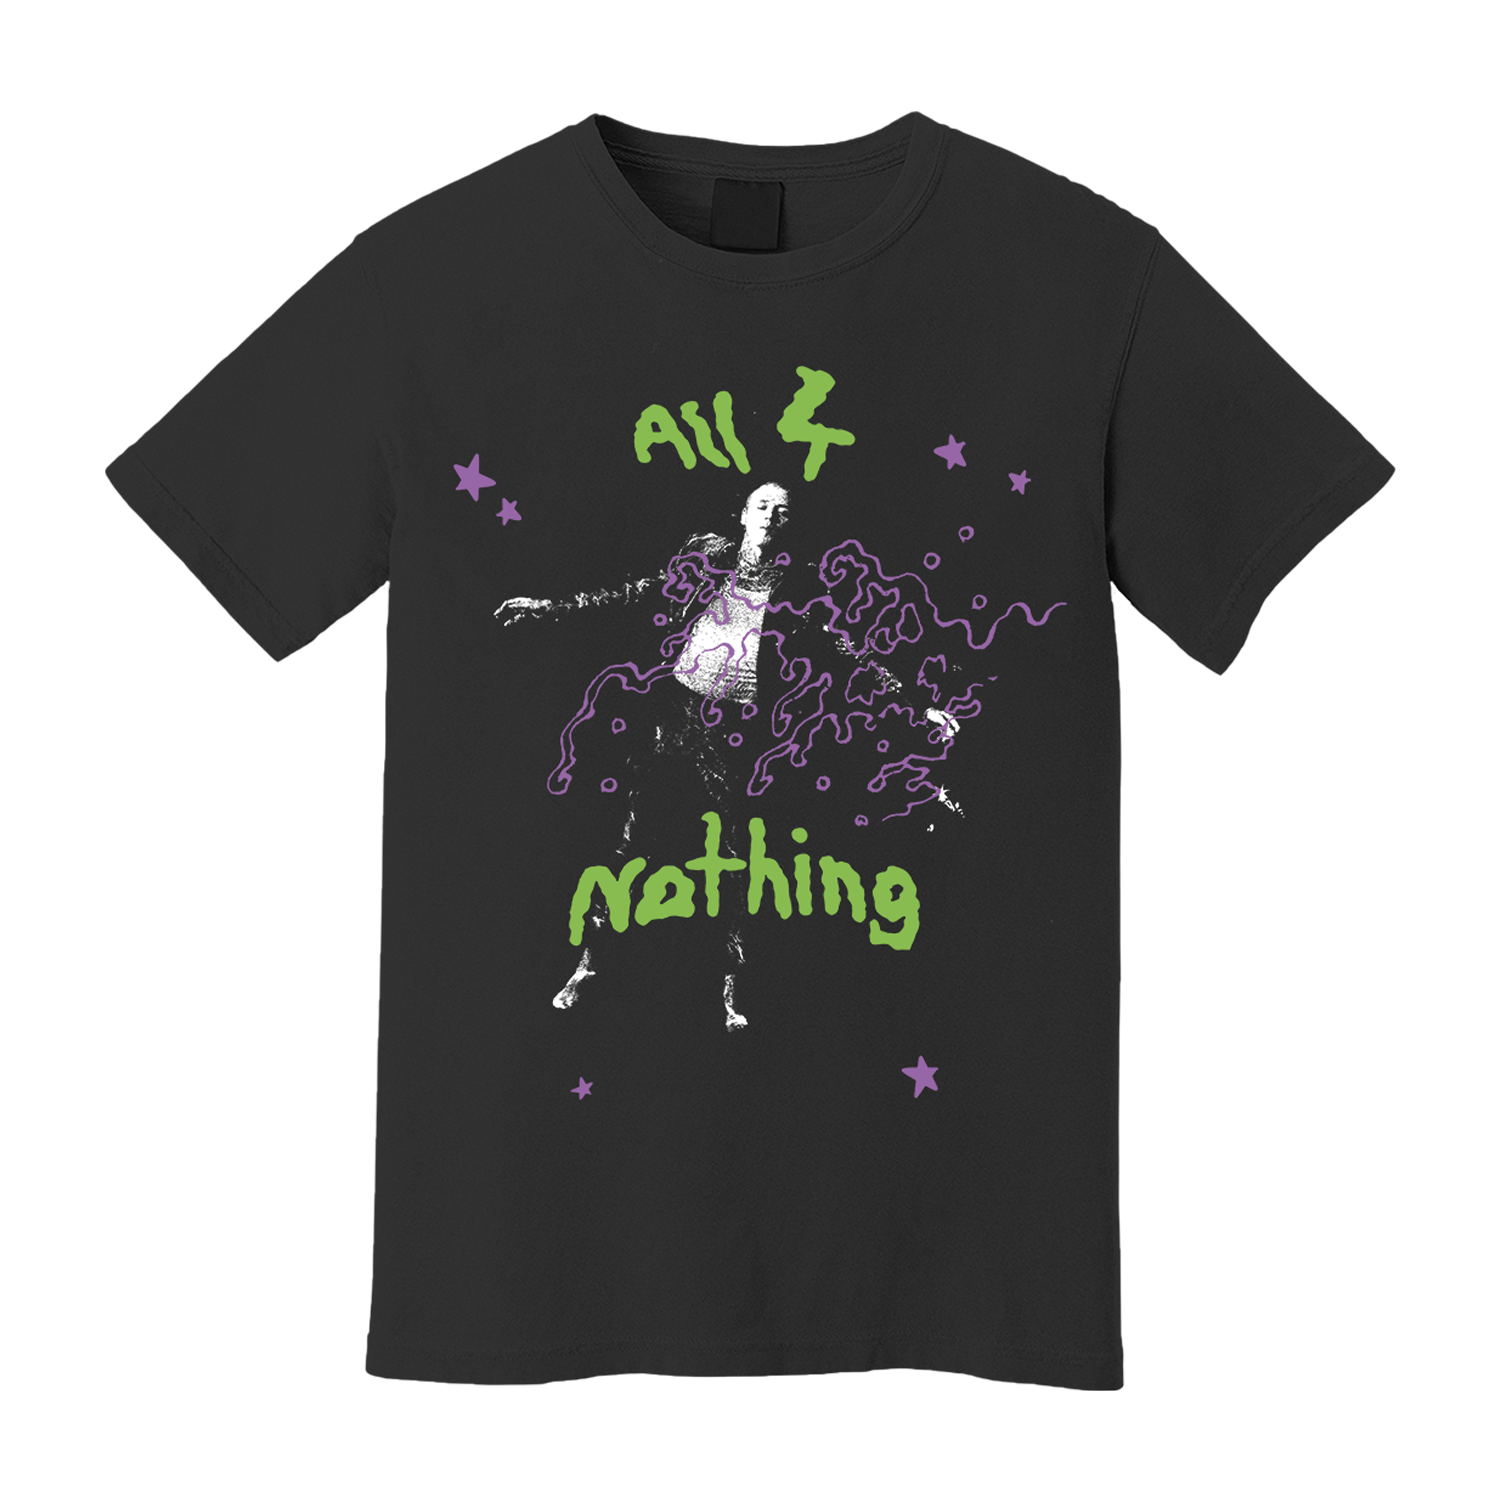 All 4 Nothing - Black T-Shirt + CD Box Set T-Shirt